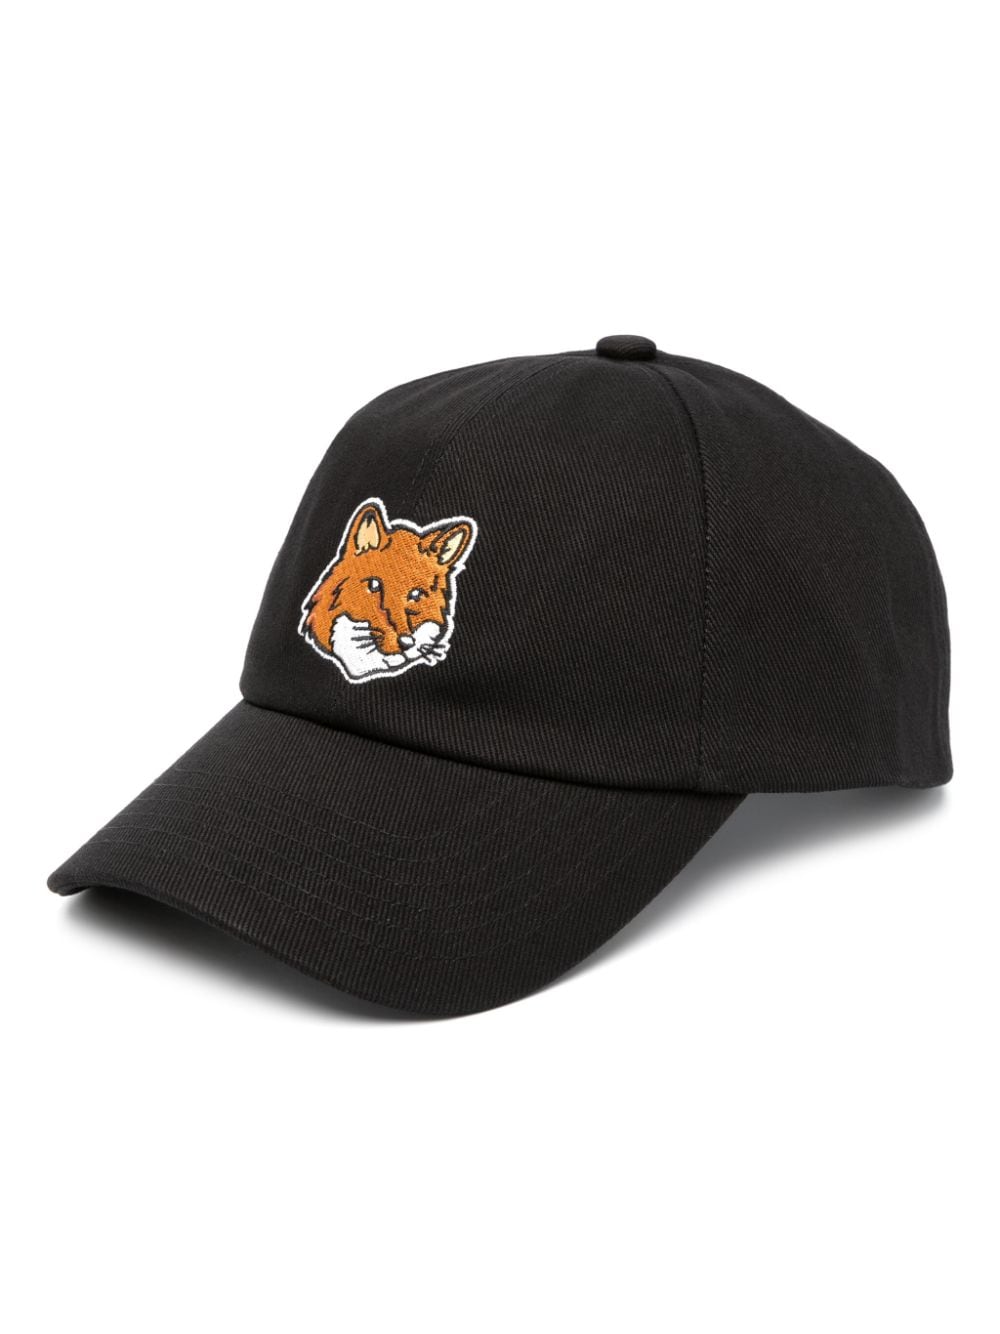 Fox Cap